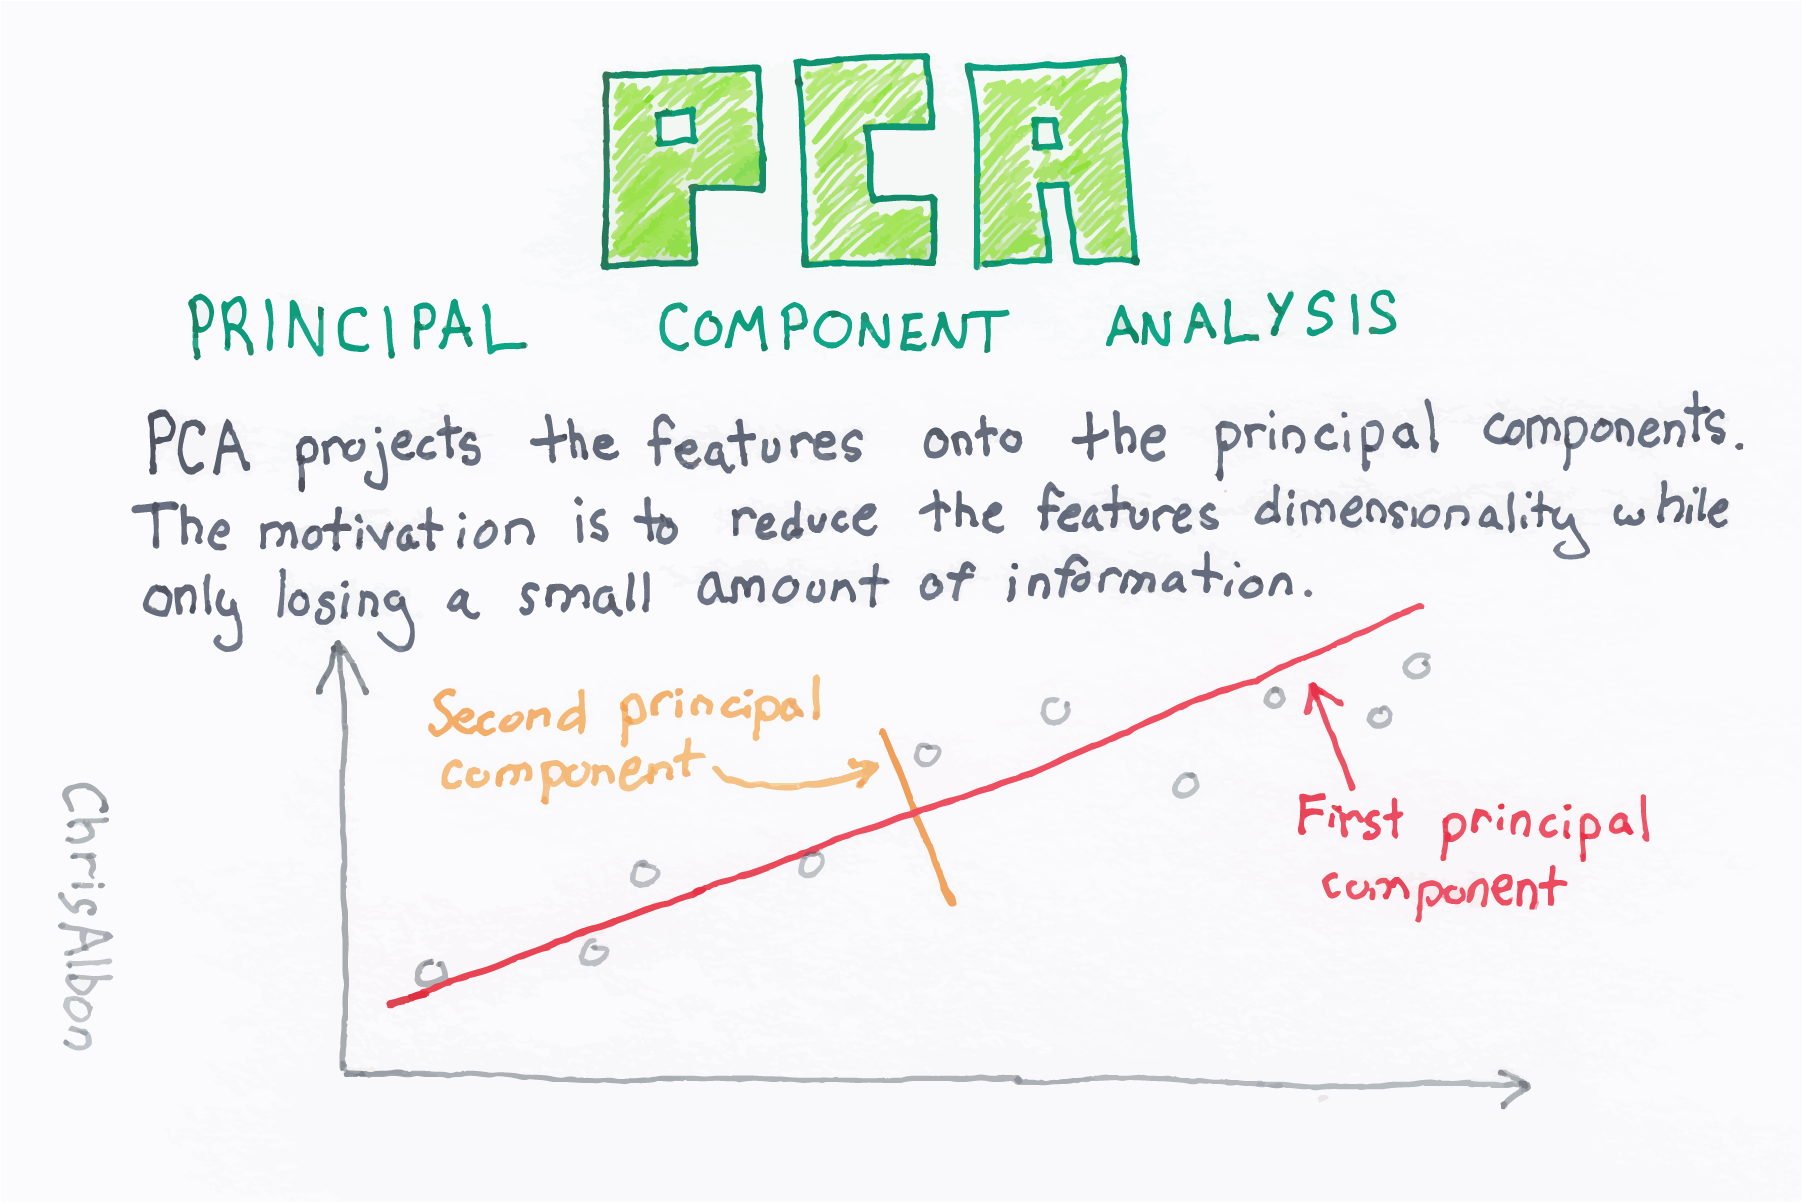 PCA(Principal Component Analysis) (Andrew Ng)